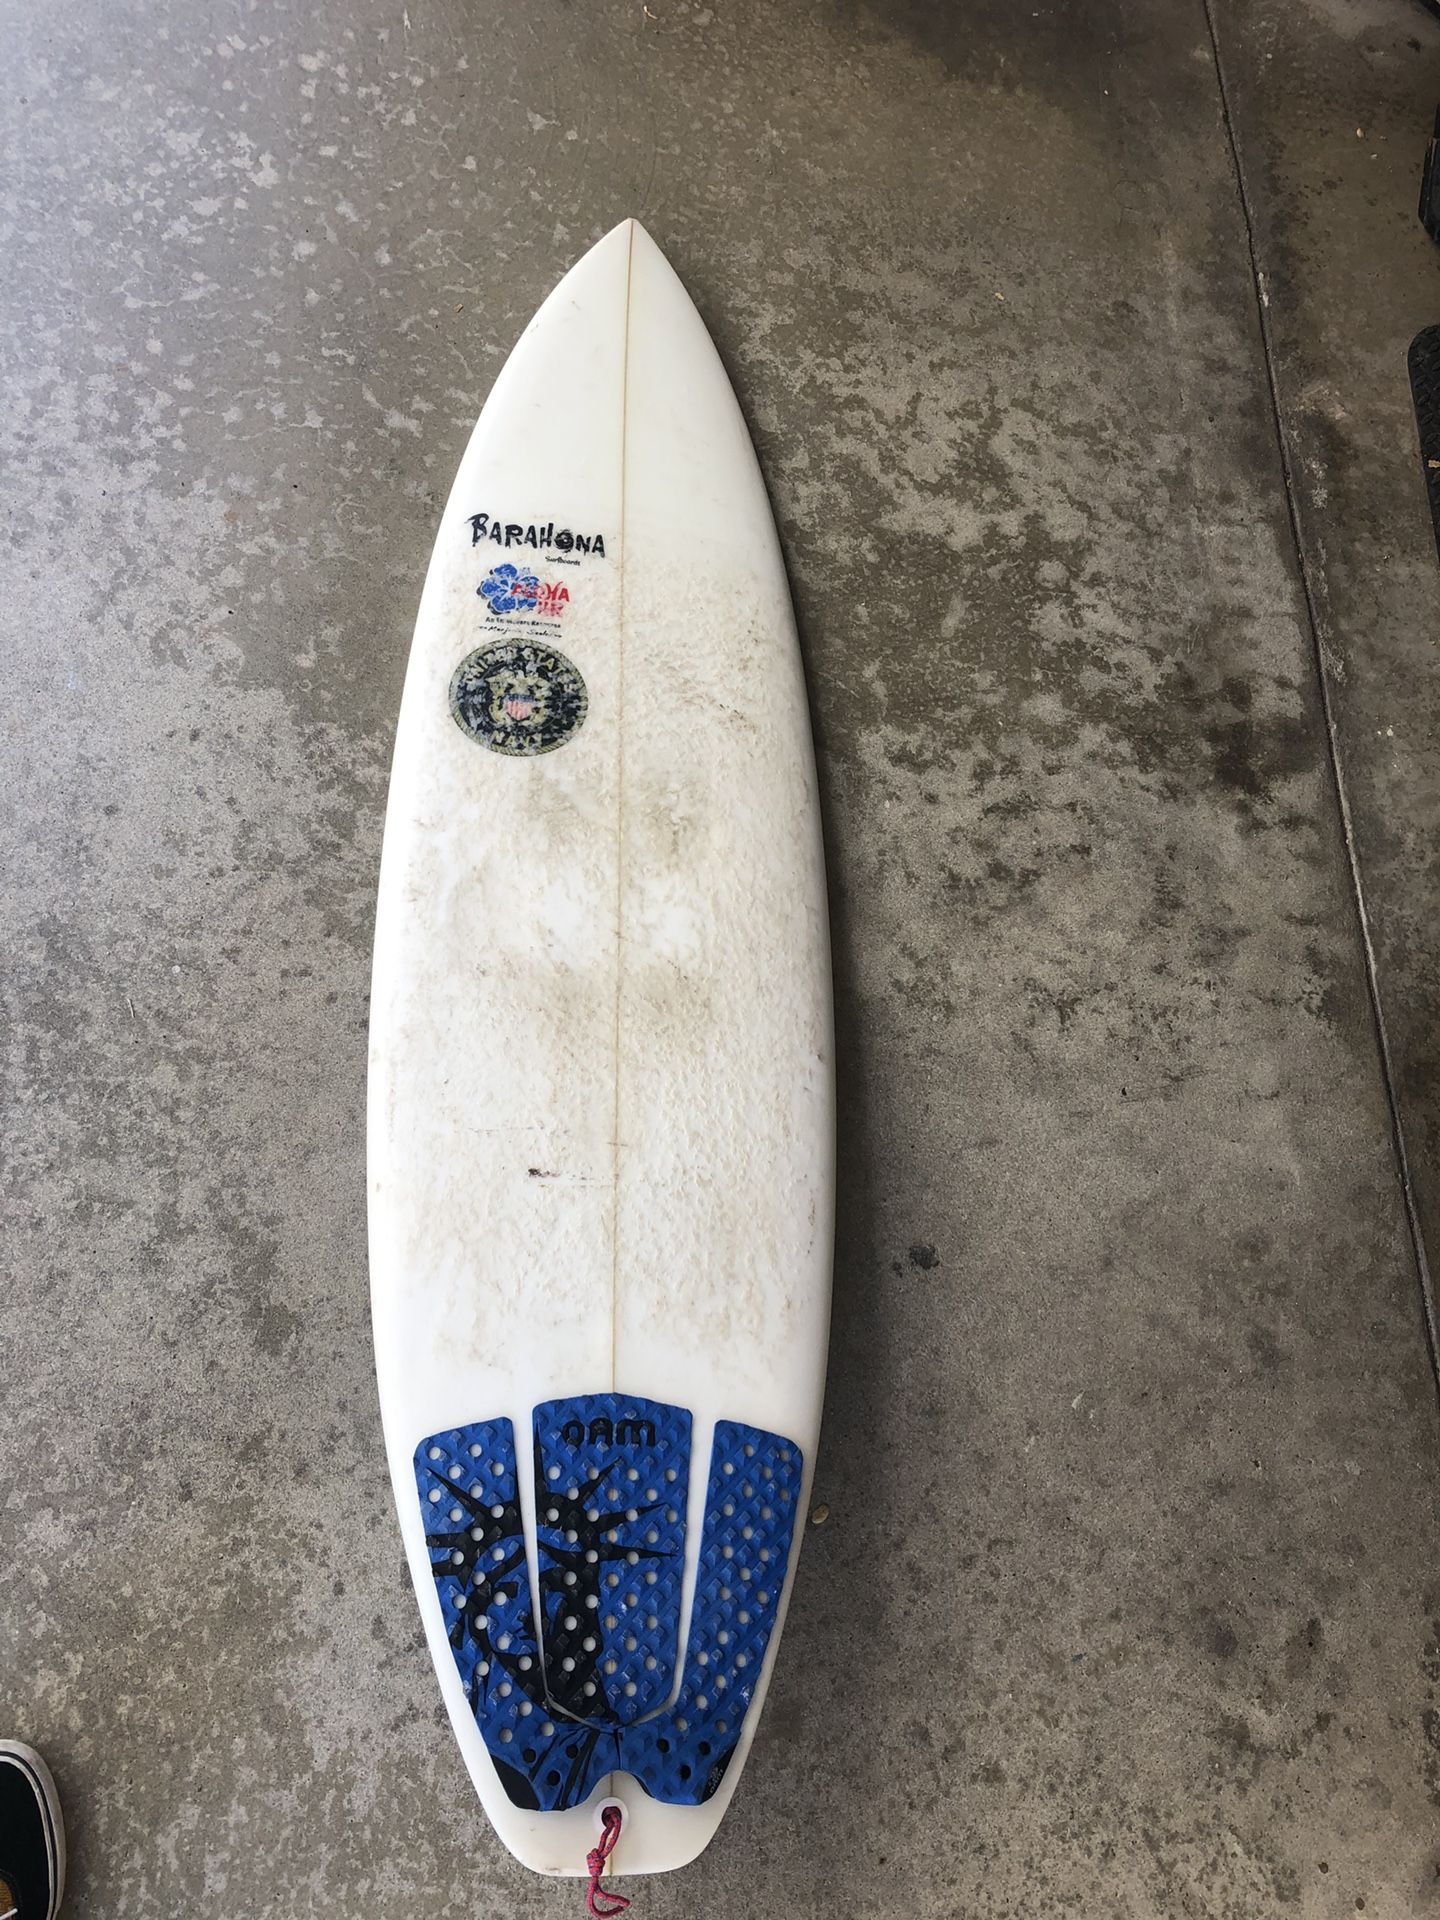 Barahona Surfboard - 5’9 shortboard